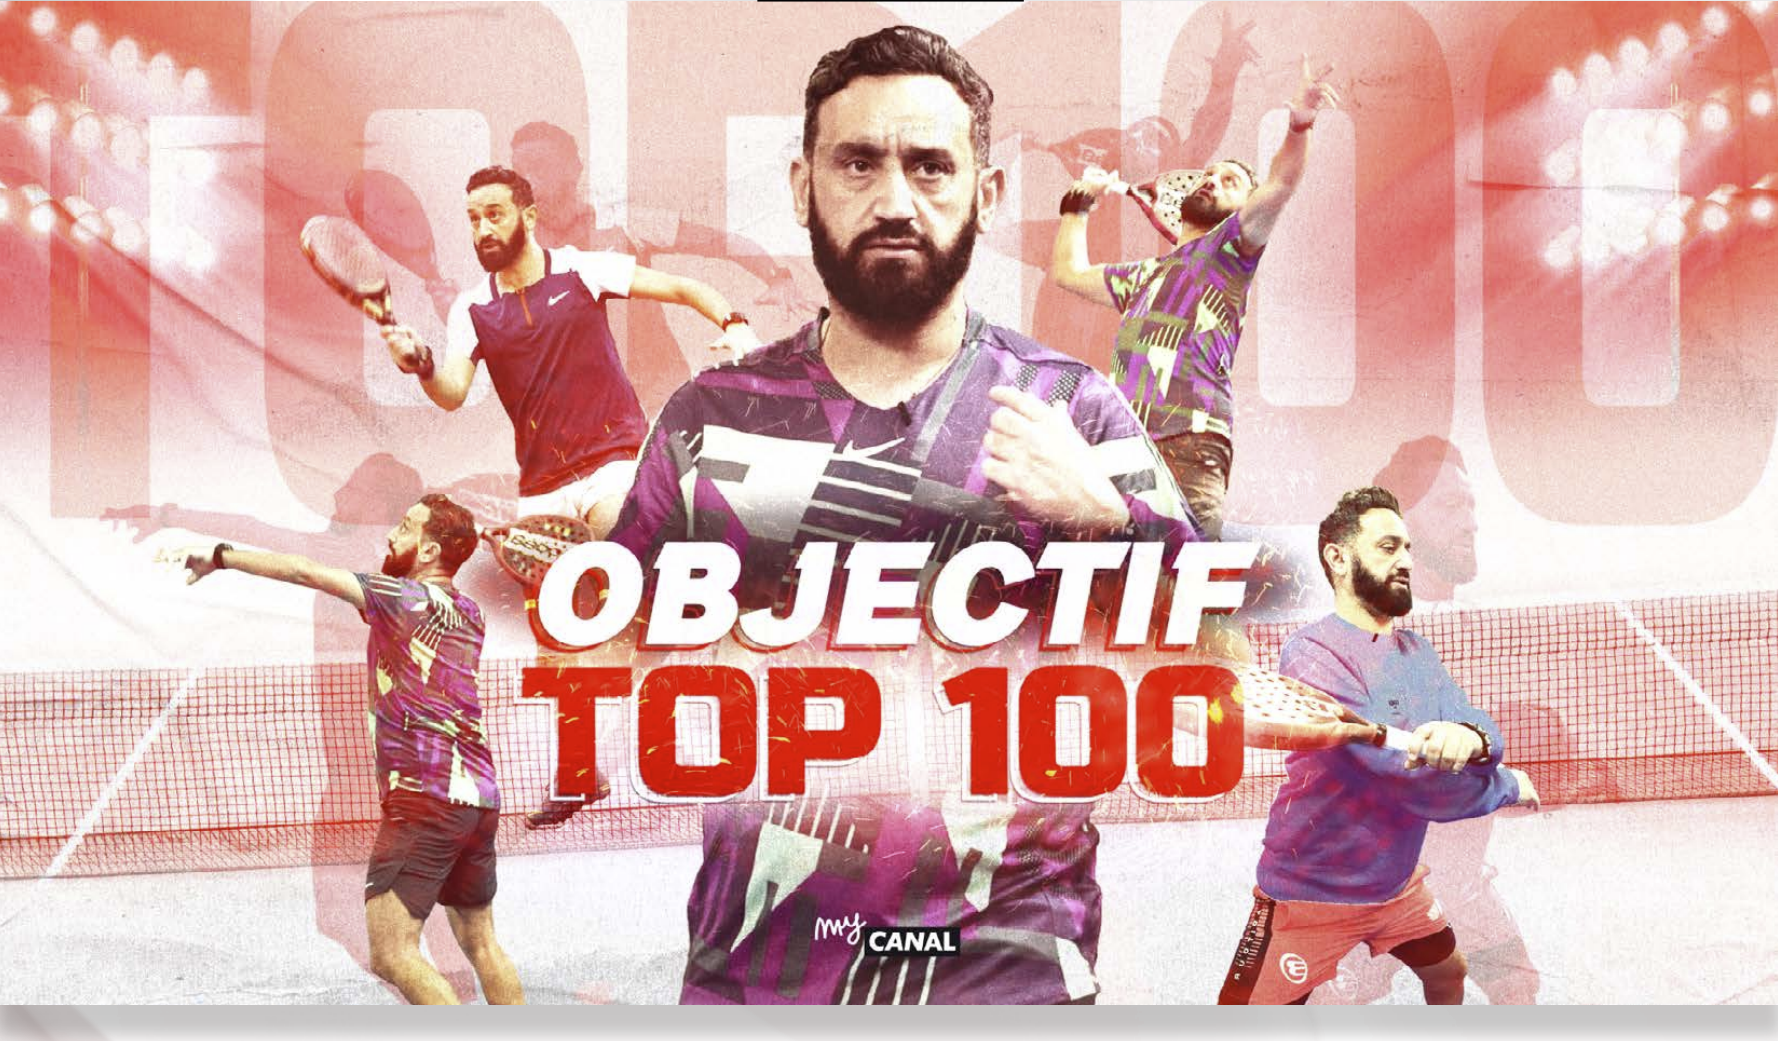 Obiettivo top 100 stagione 2 di Cyril Hanouna disponibile questo giovedì 23 febbraio!